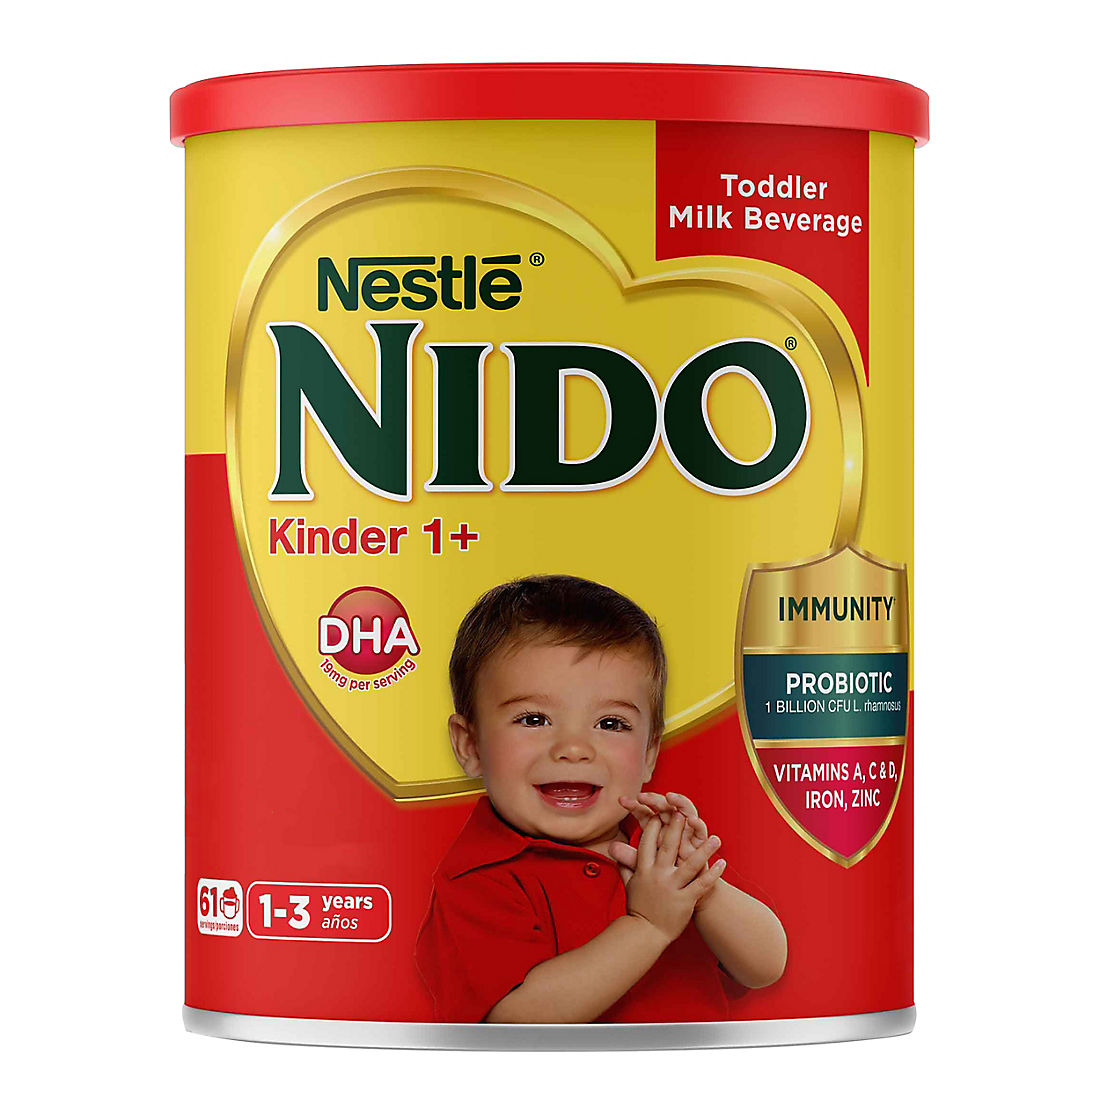 Nestle Nido Kinder 1+, 4.85 lbs.